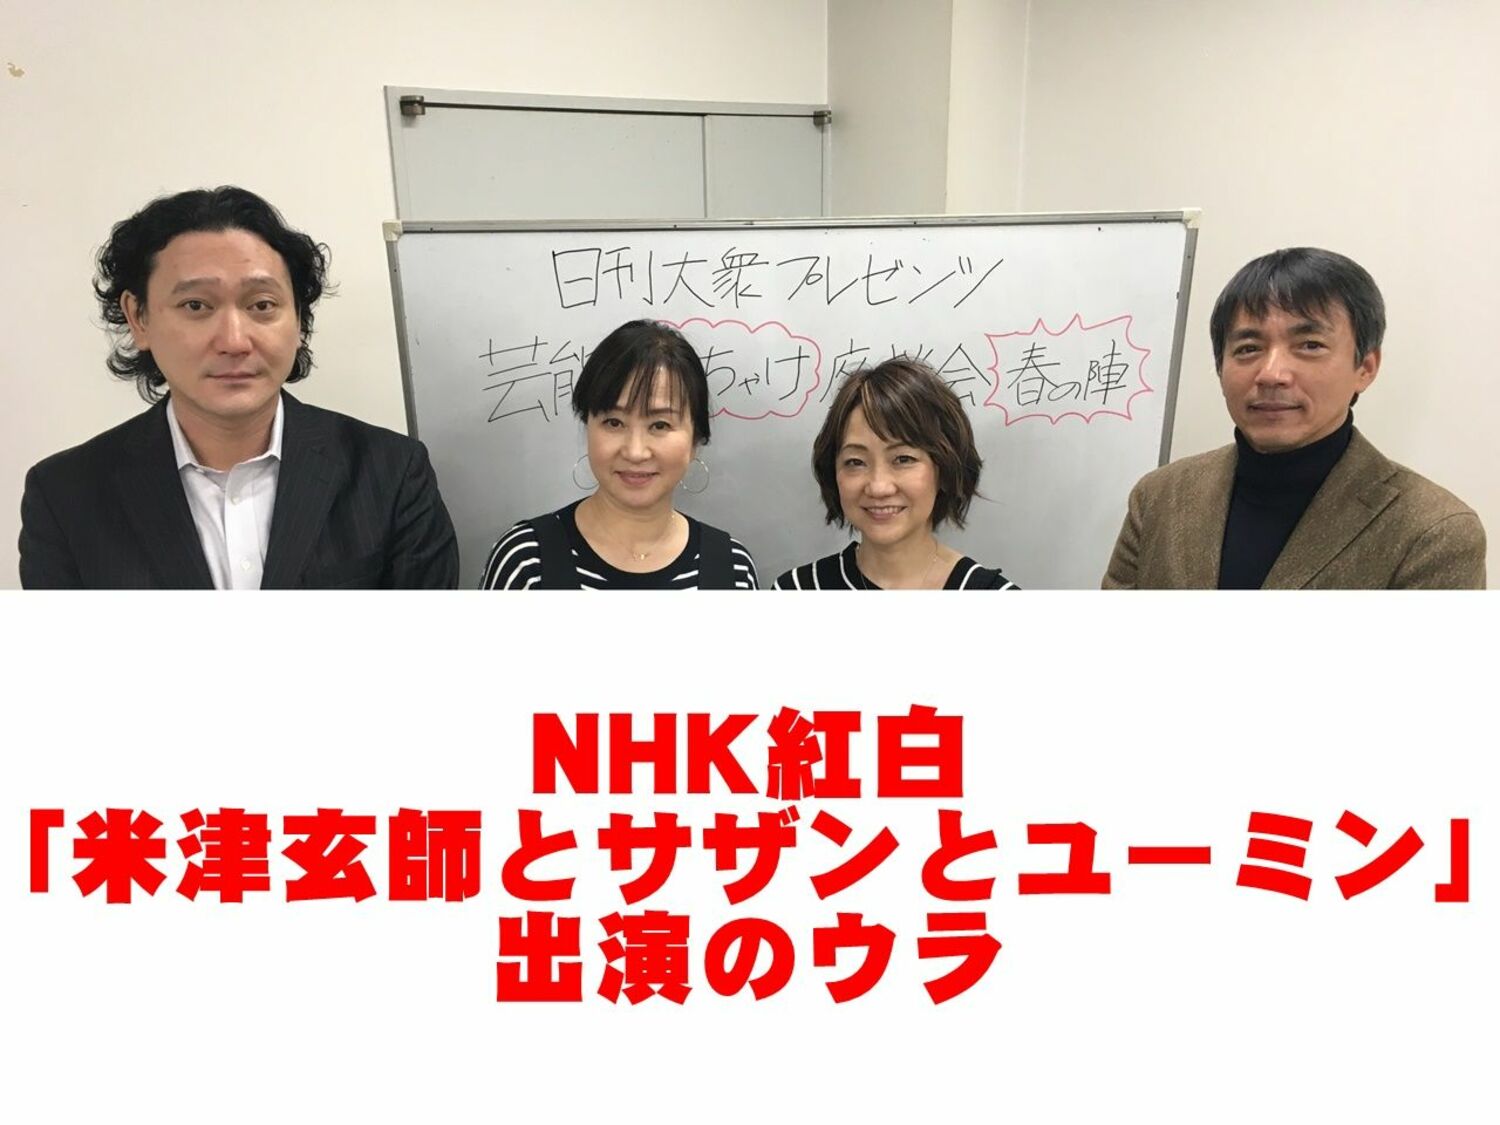 NHK紅白歌合戦「米津玄師とサザンとユーミン」出演のウラの画像